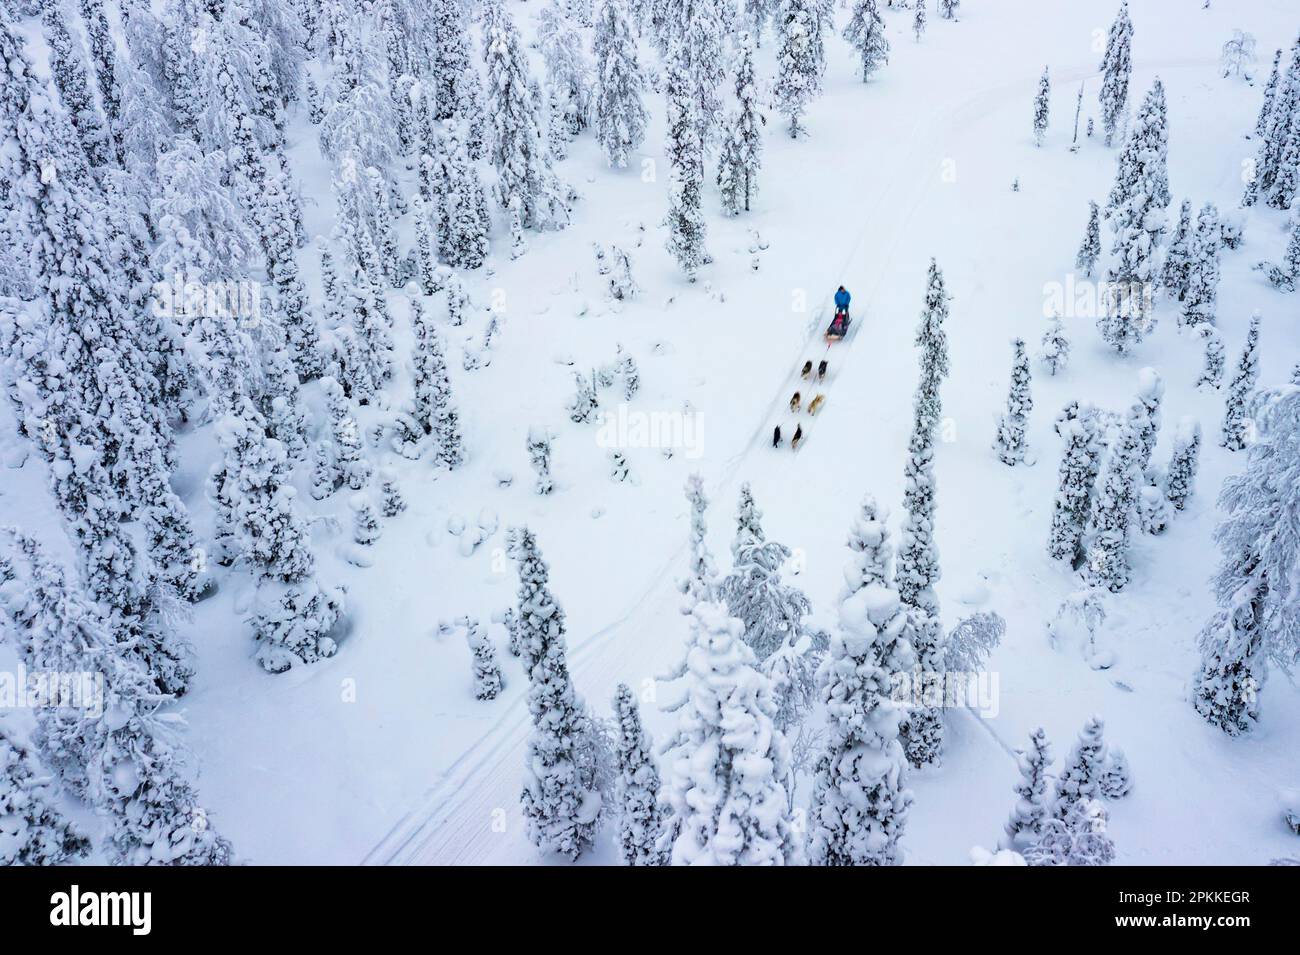 Vue aérienne des touristes traîneau à chiens dans la forêt enneigée, Laponie, Finlande, Europe Banque D'Images